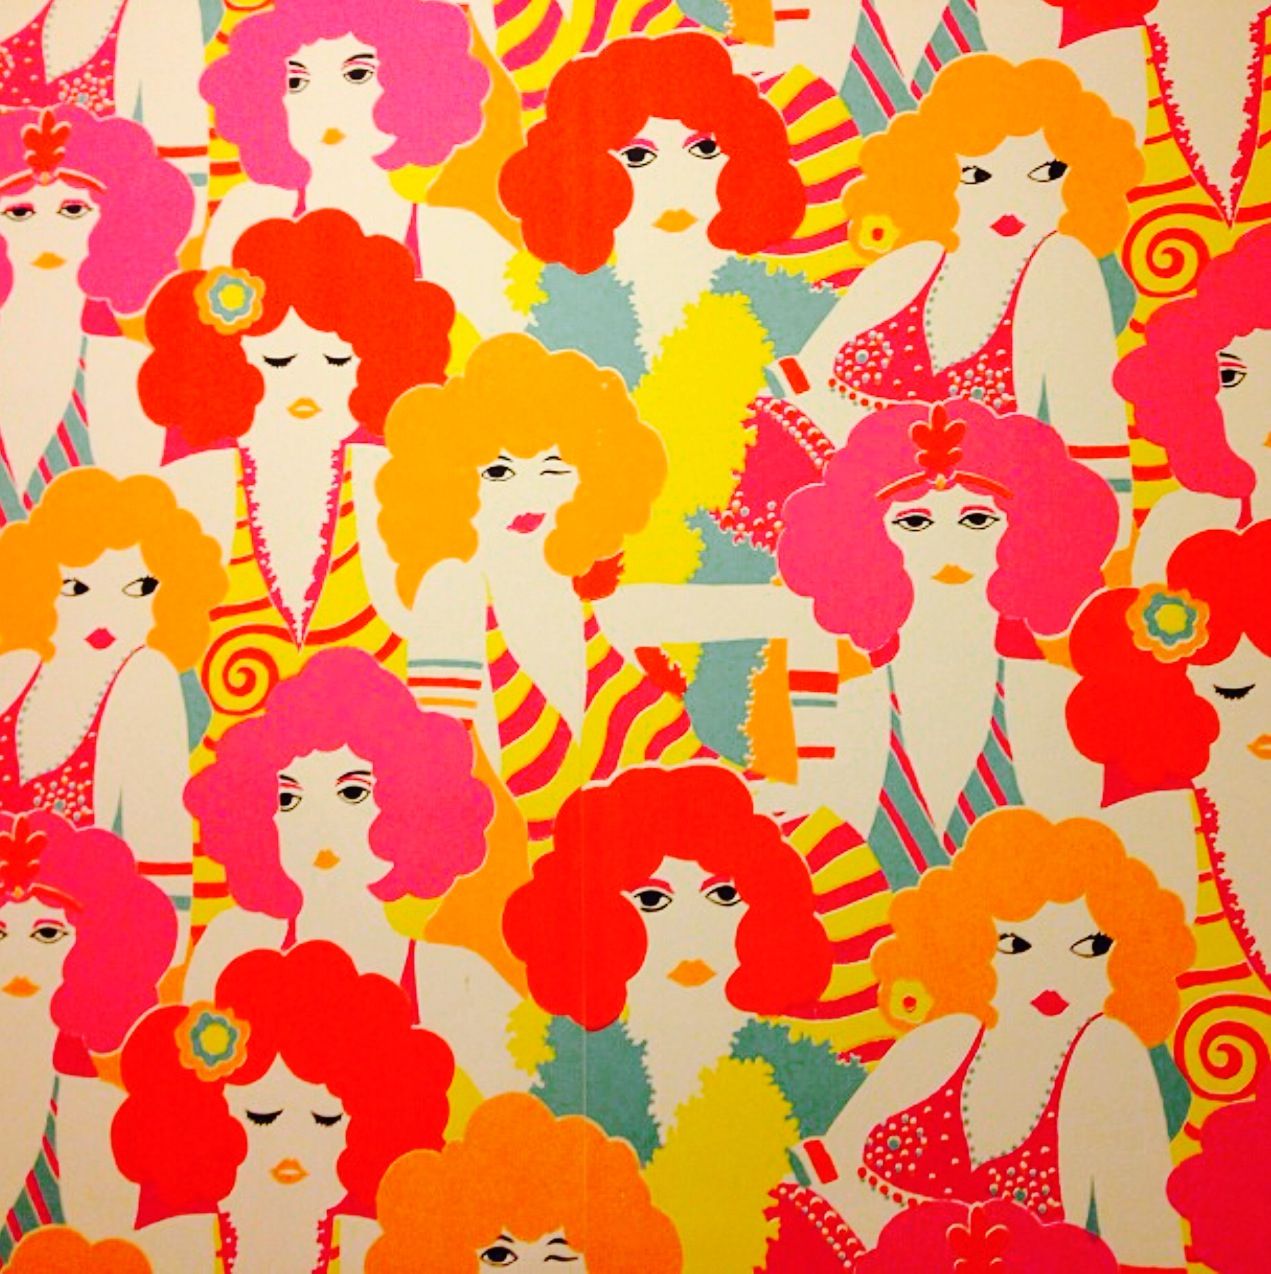 60年代スタイルの壁紙,アート,繊維,パターン,設計,子供アート